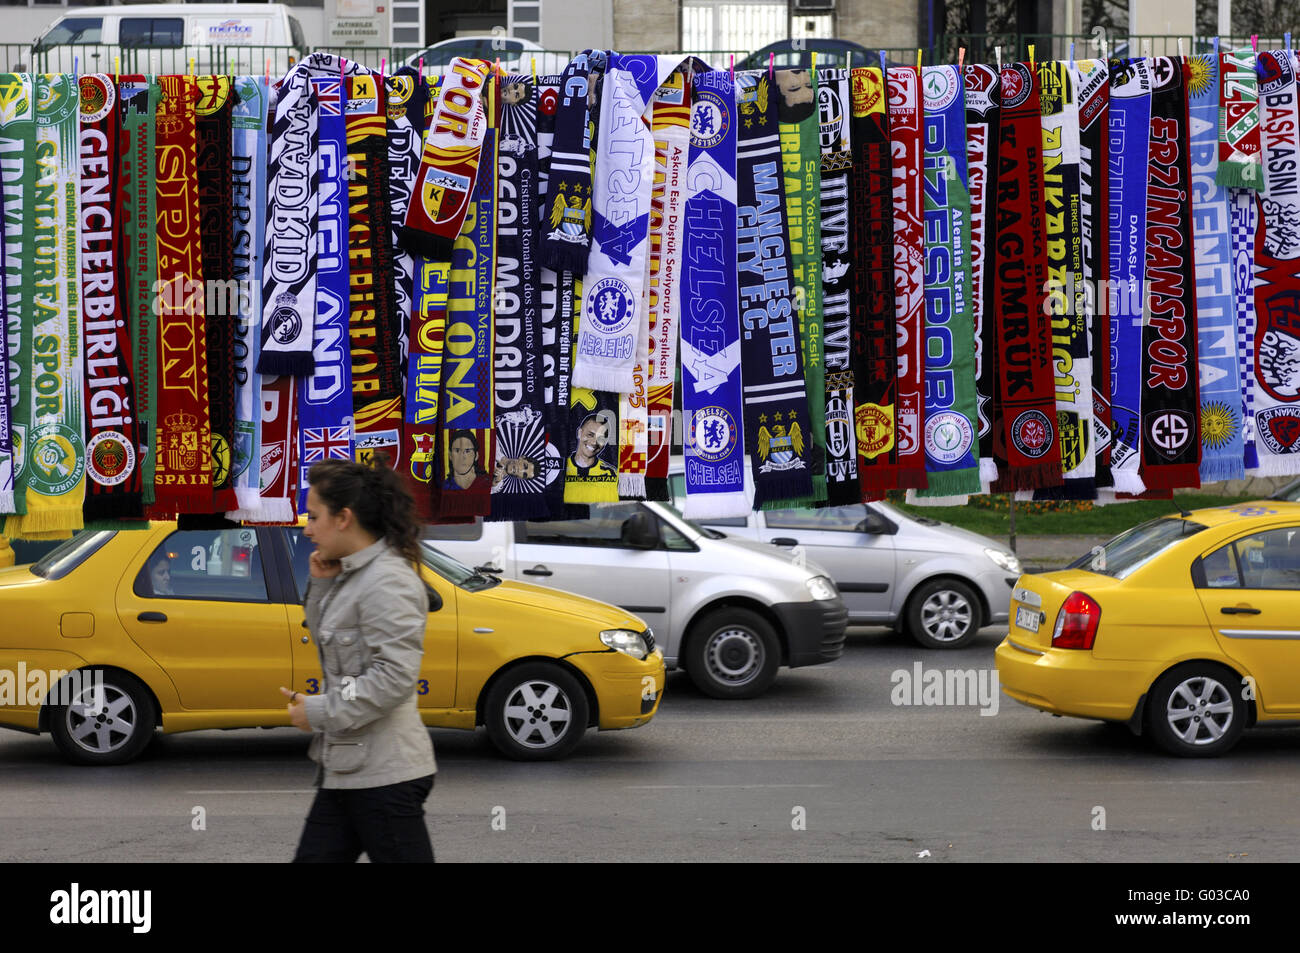 Les écharpes de clubs de football à vendre à Istanbul Banque D'Images